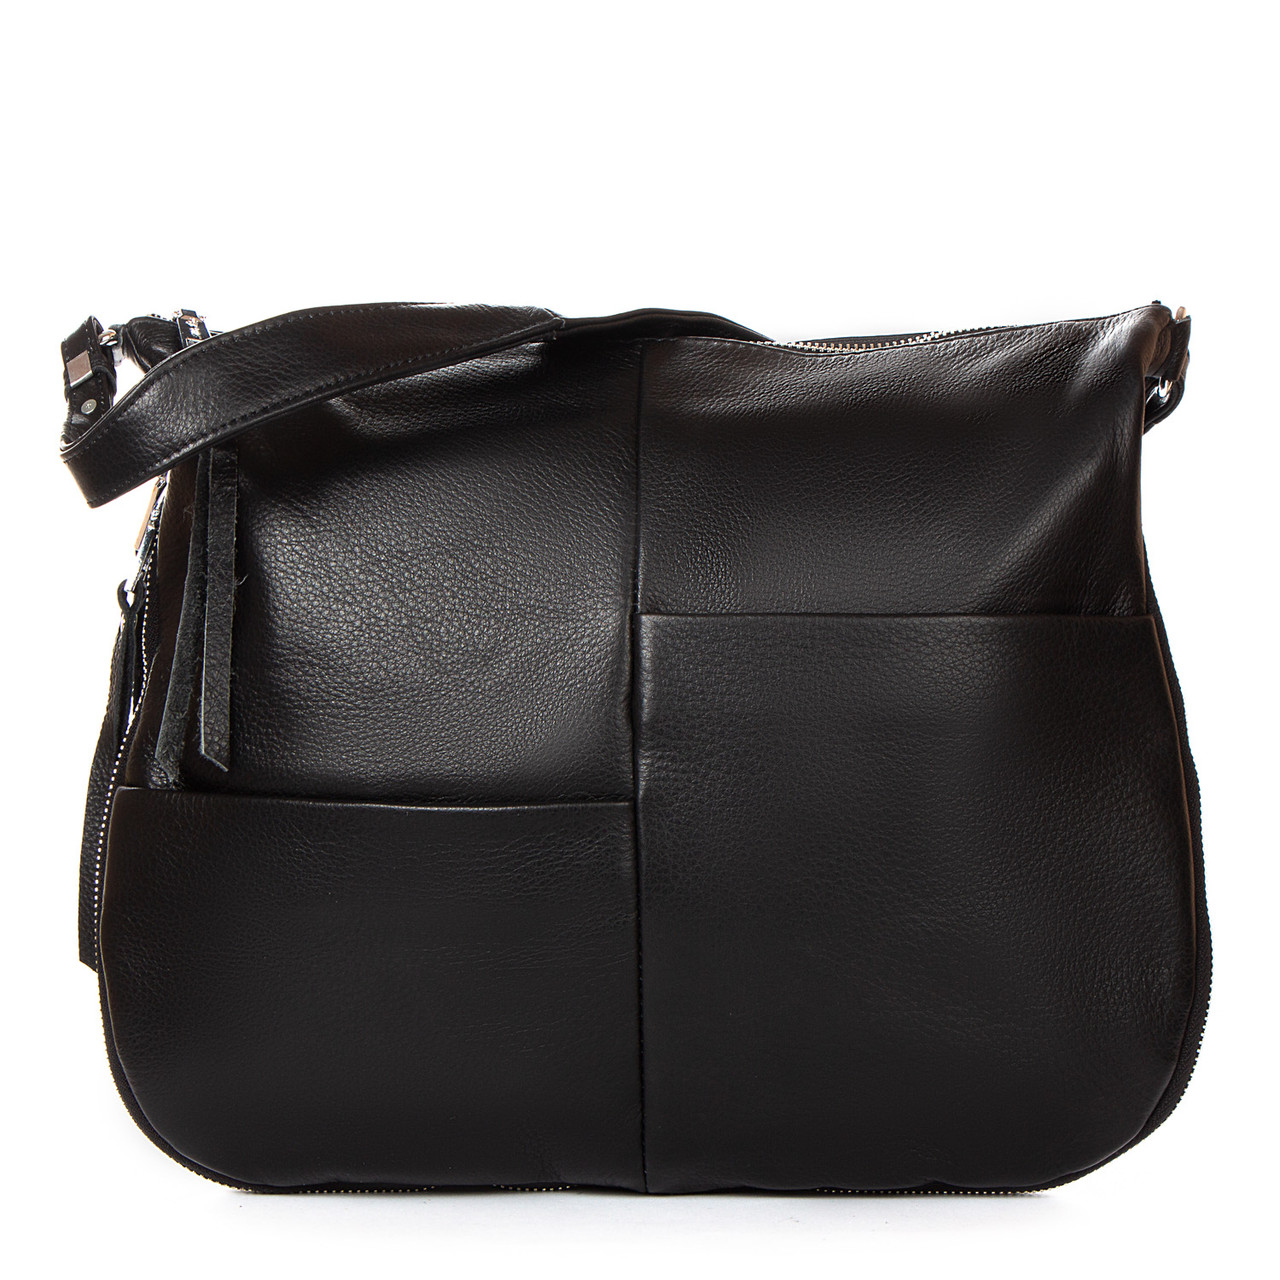 Жіноча шкіряна сумка 2032-9 black,Купити жіночі сумки гуртом і в роздріб із натуральної шкіри в Україні